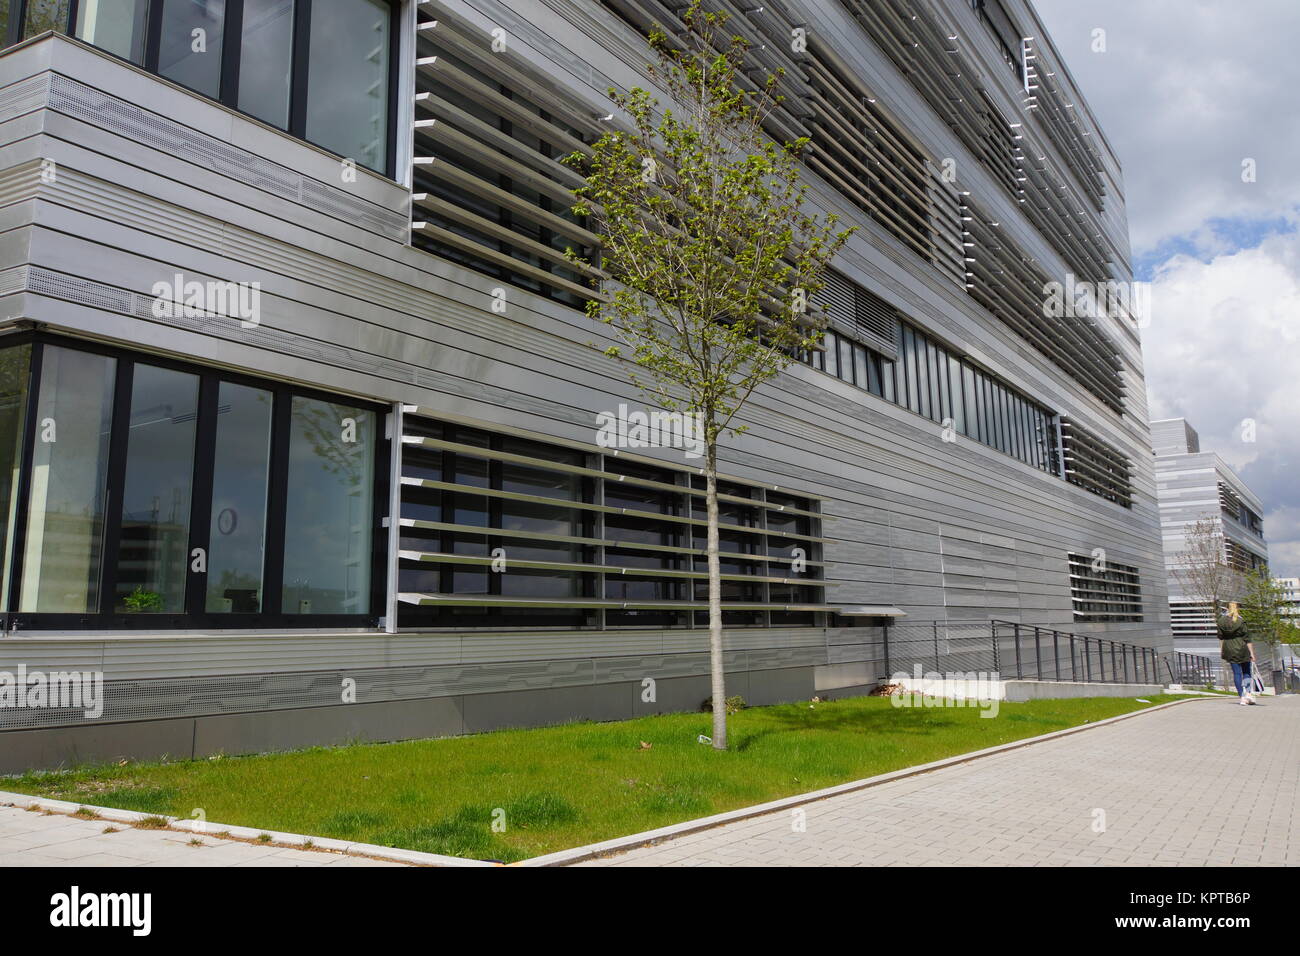 La société Architektur auf dem Campus der Hochschule, Düsseldorf, Nordrhein-Westfalen, Deutschland Banque D'Images